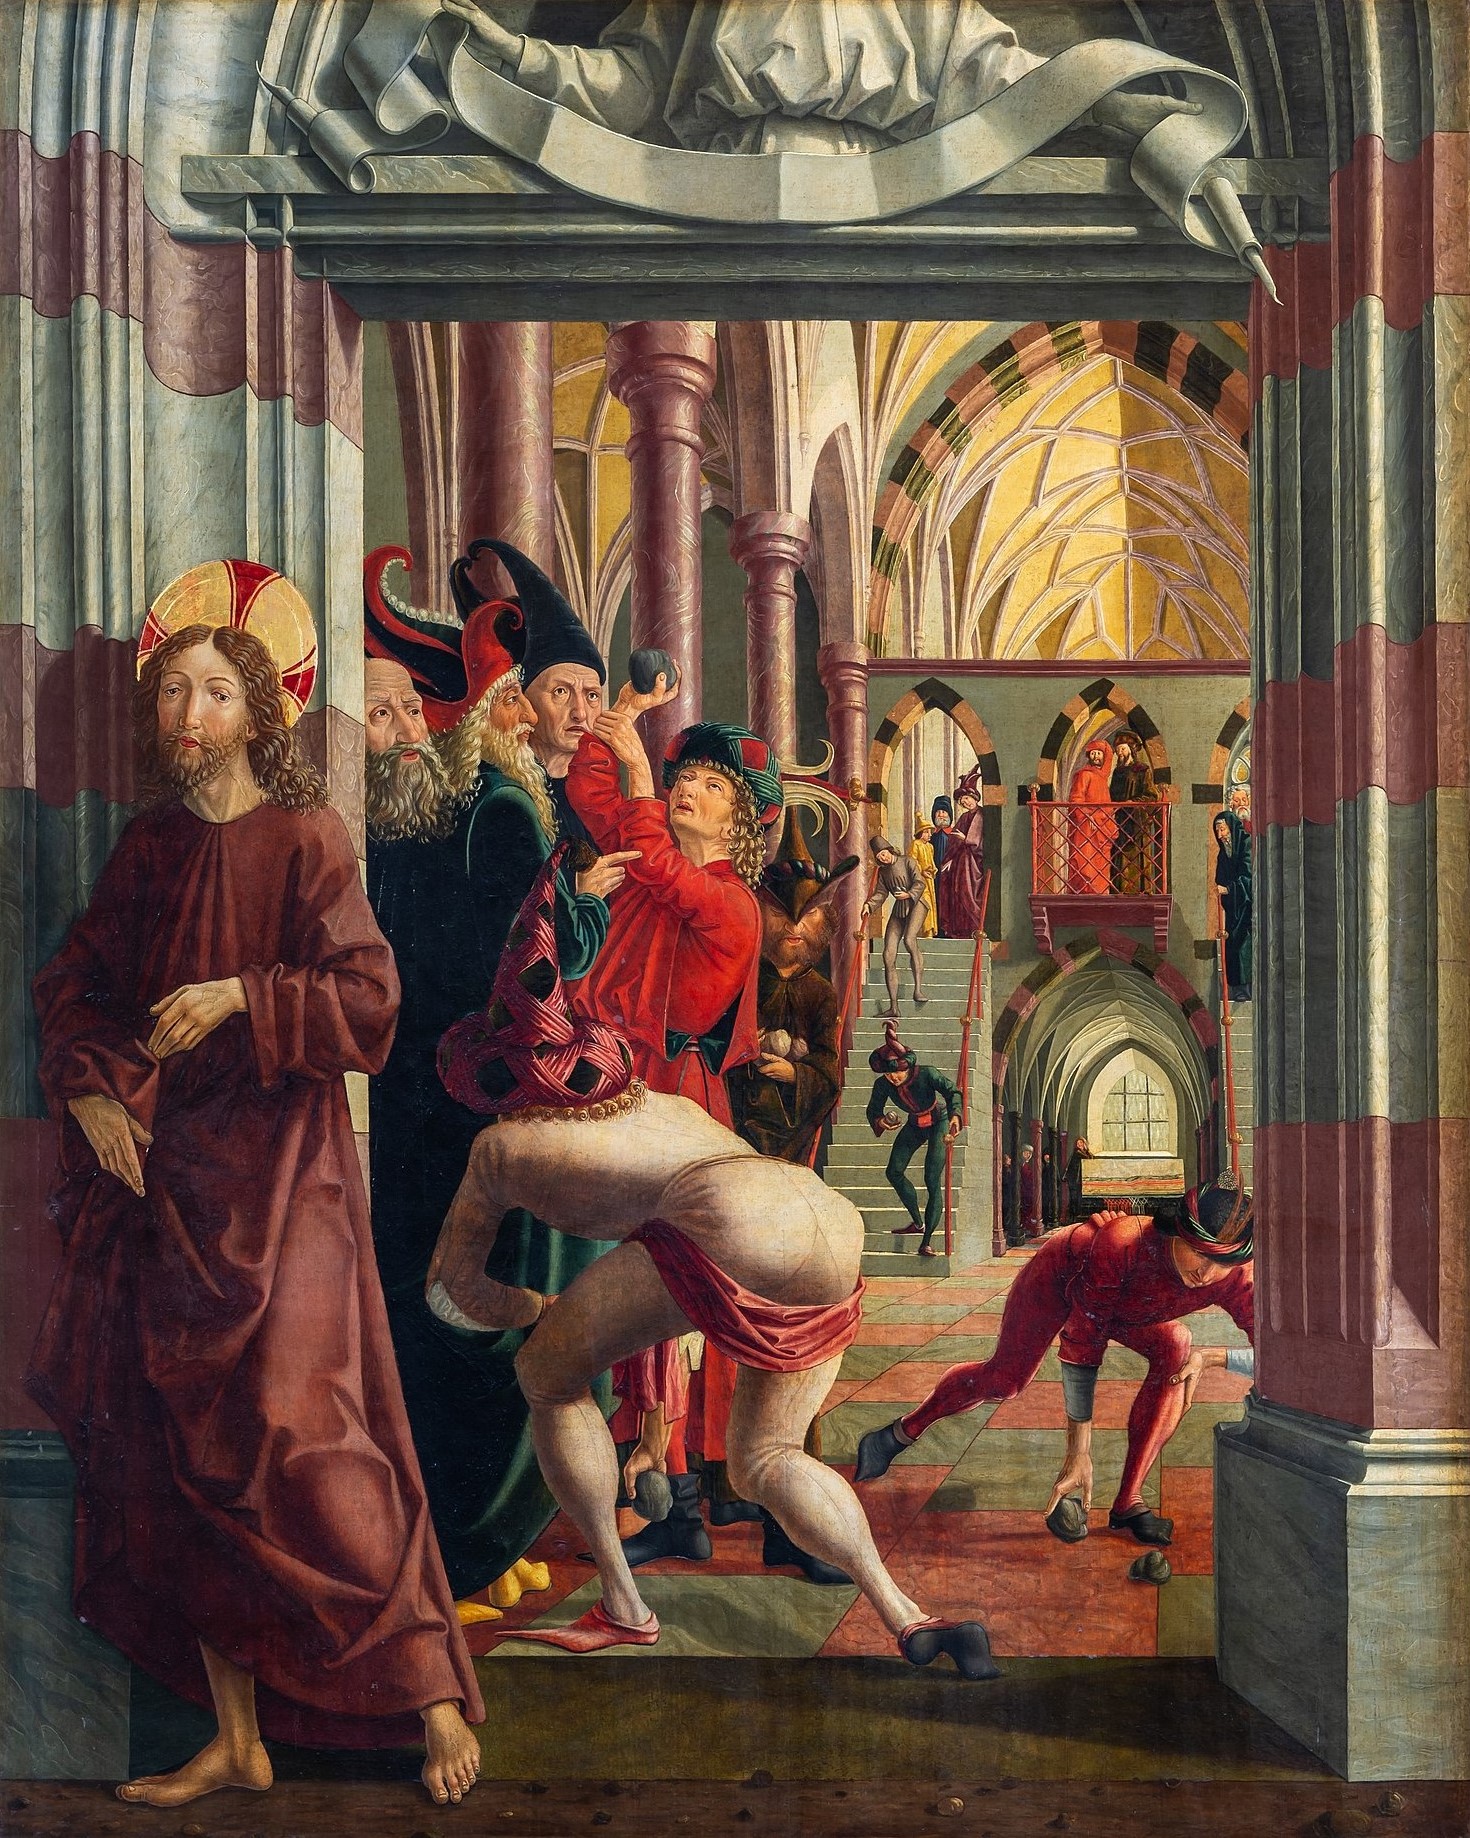 archers 1471–81 Michael Pacher, La Tentative de lapidation du Christ,St._Wolfgang_kath._Pfarrkirche